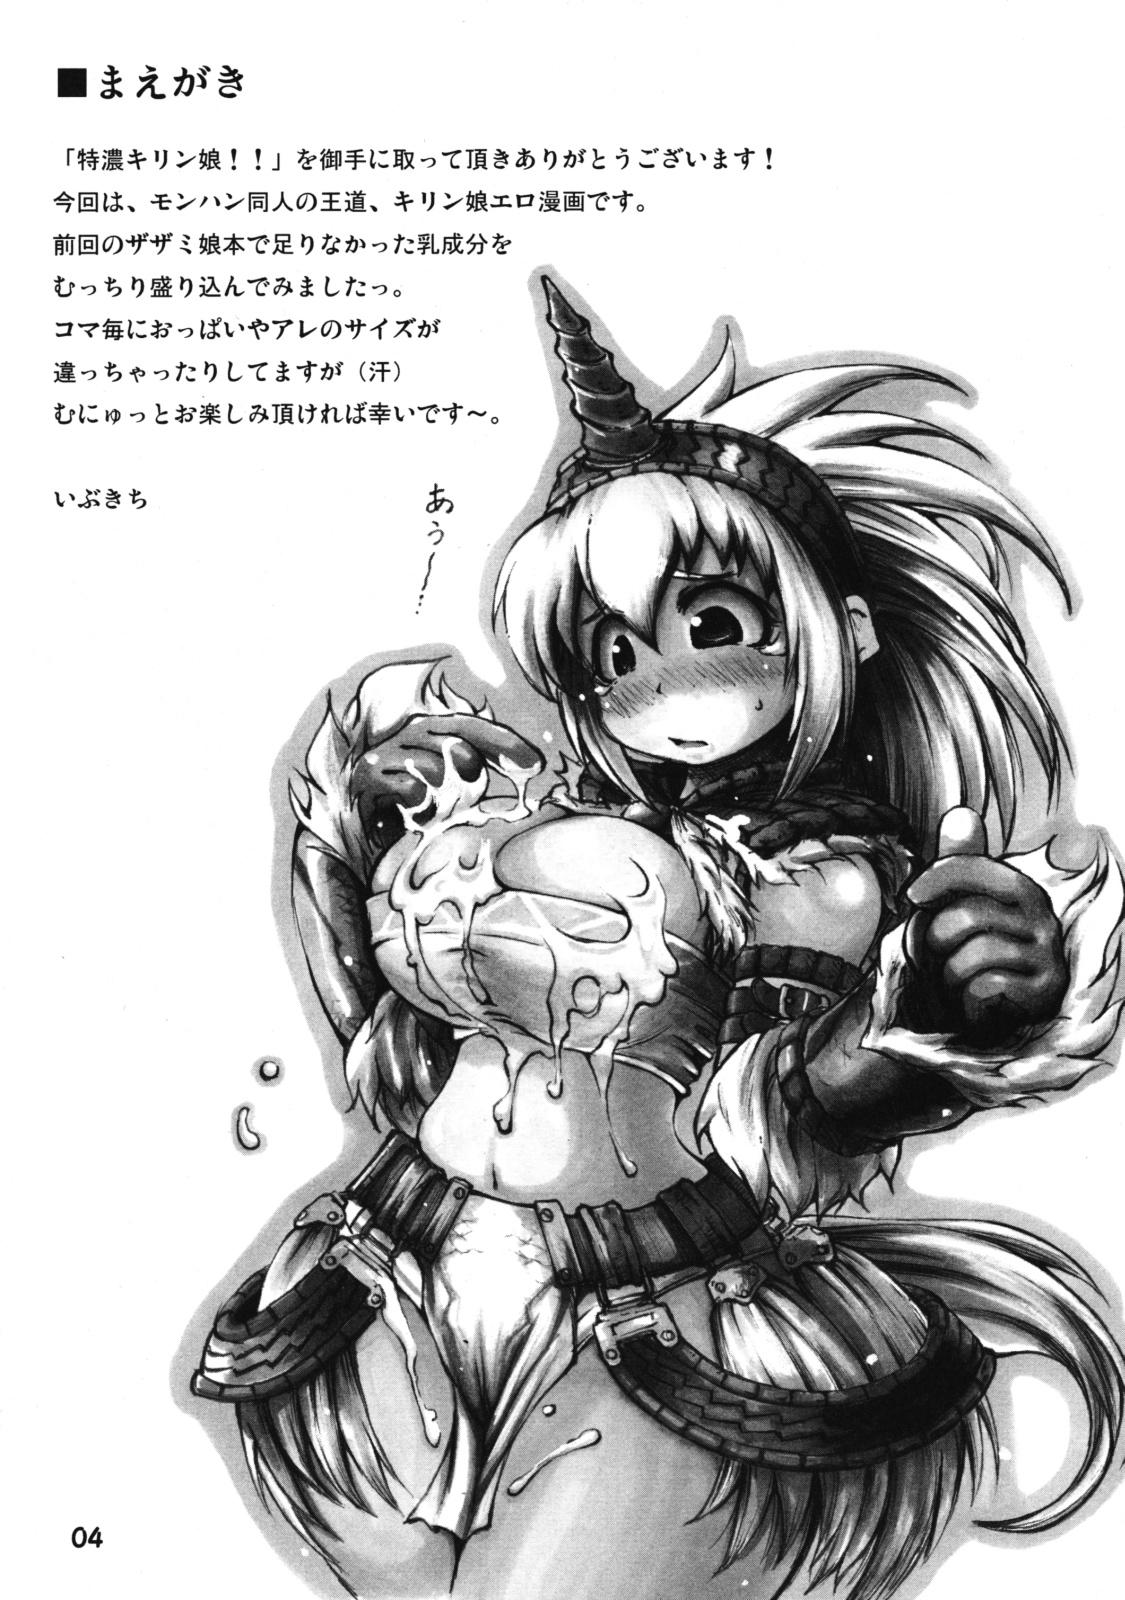 Pounded Tokunou Kirin Musume!! - Monster hunter Asslicking - Page 3